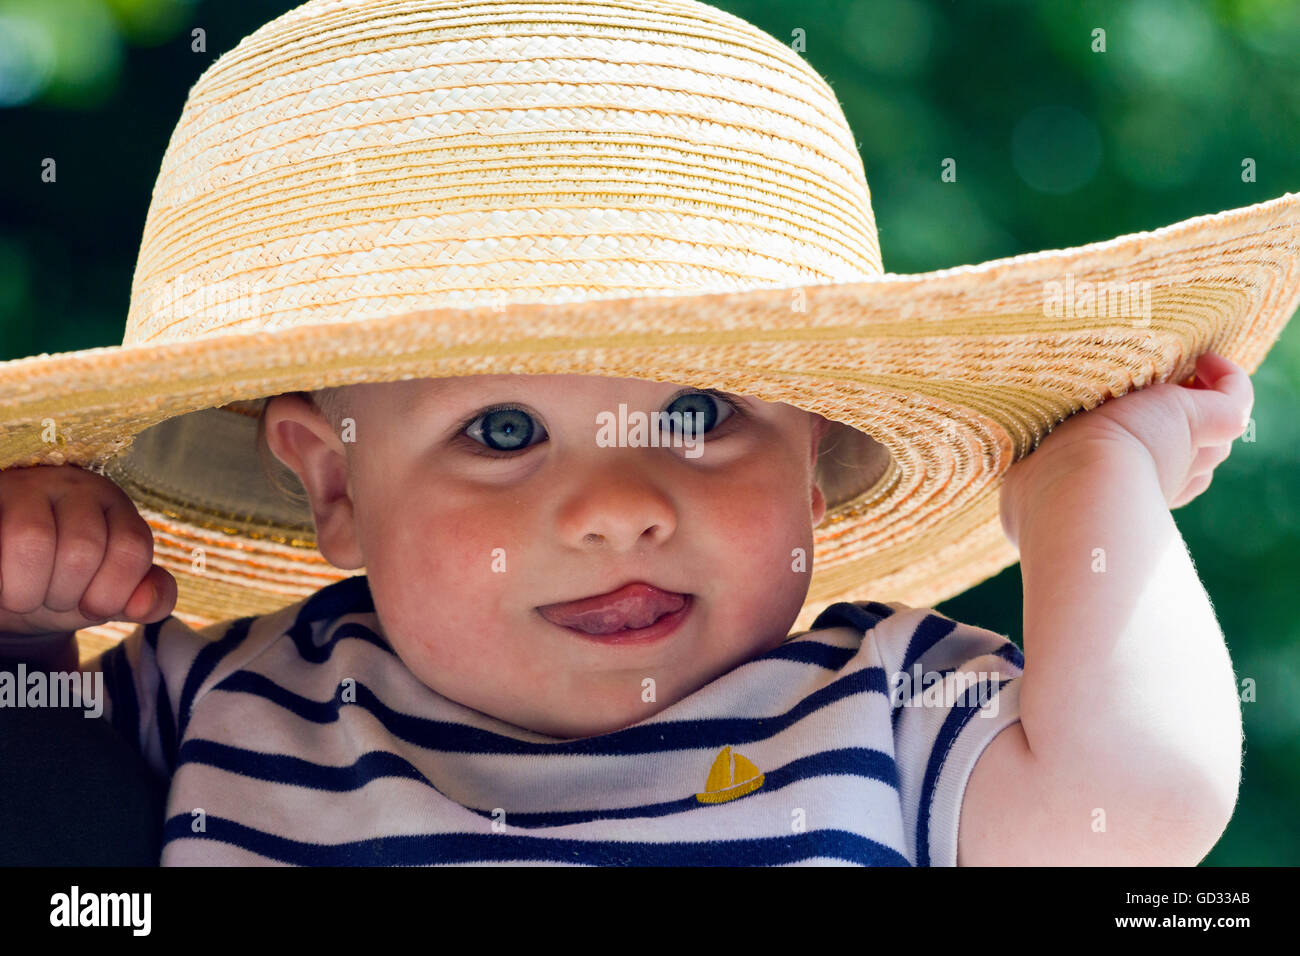 Bébé garçon portant un chapeau de paille Photo Stock - Alamy